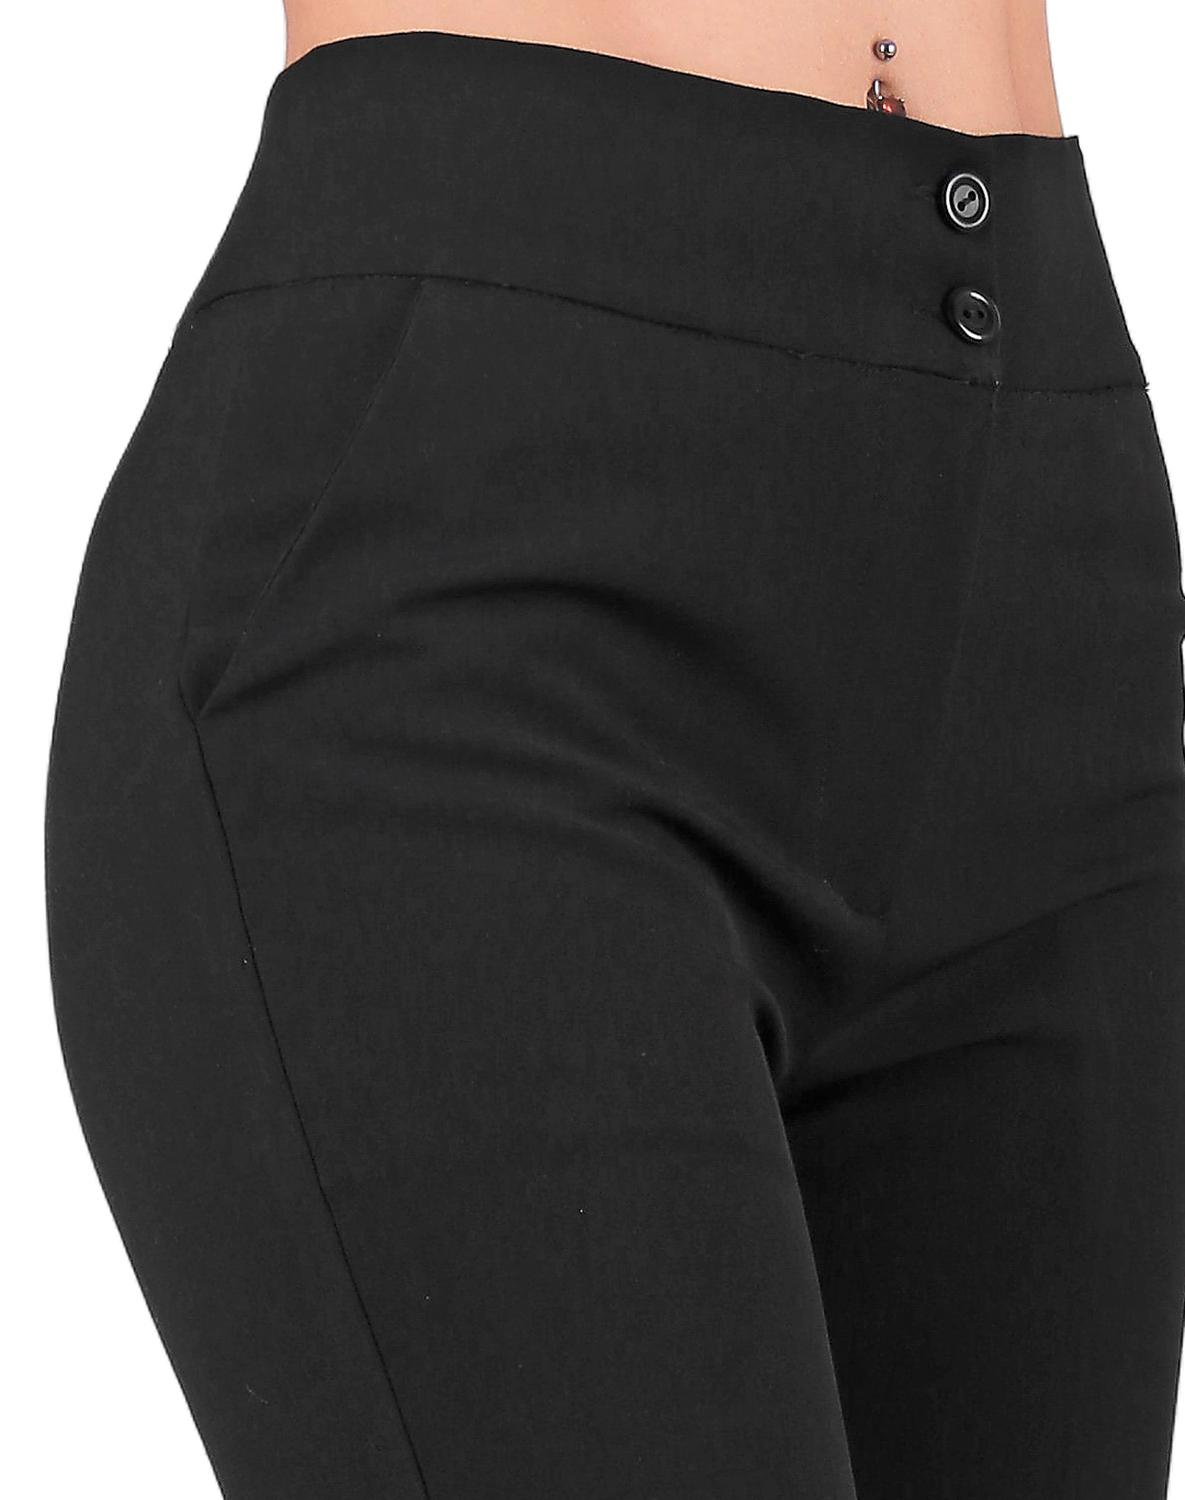 Pantalón Vestir Mujer Stfashion Negro 79304059 Spandex – SALVAJE TENTACIÓN